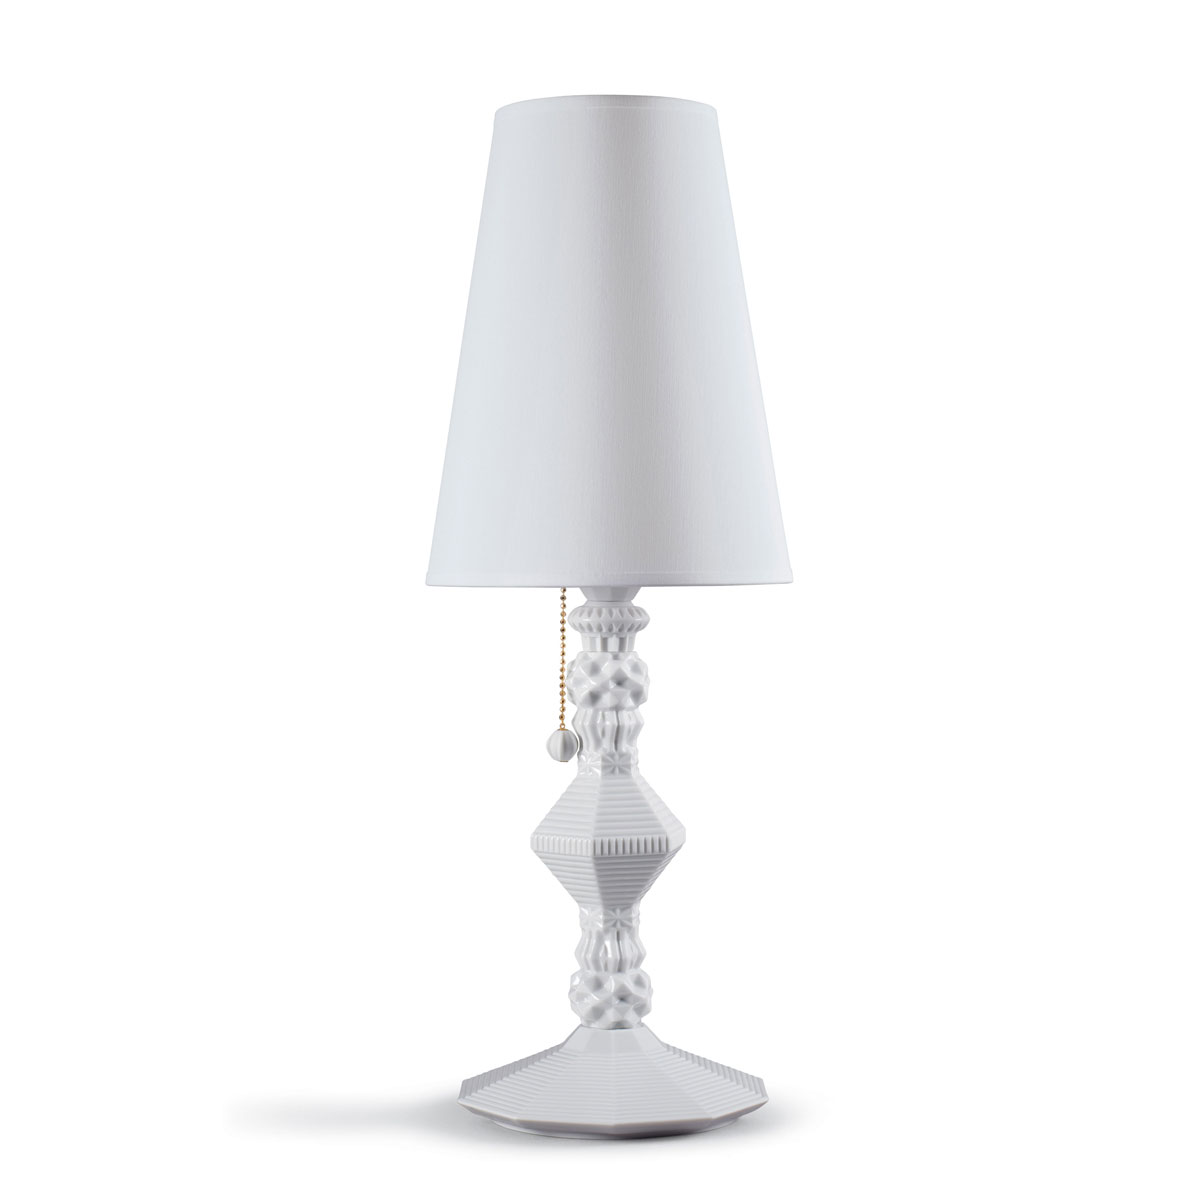 Lladro Classic Lighting, Belle De Nuit Table Lamp. White